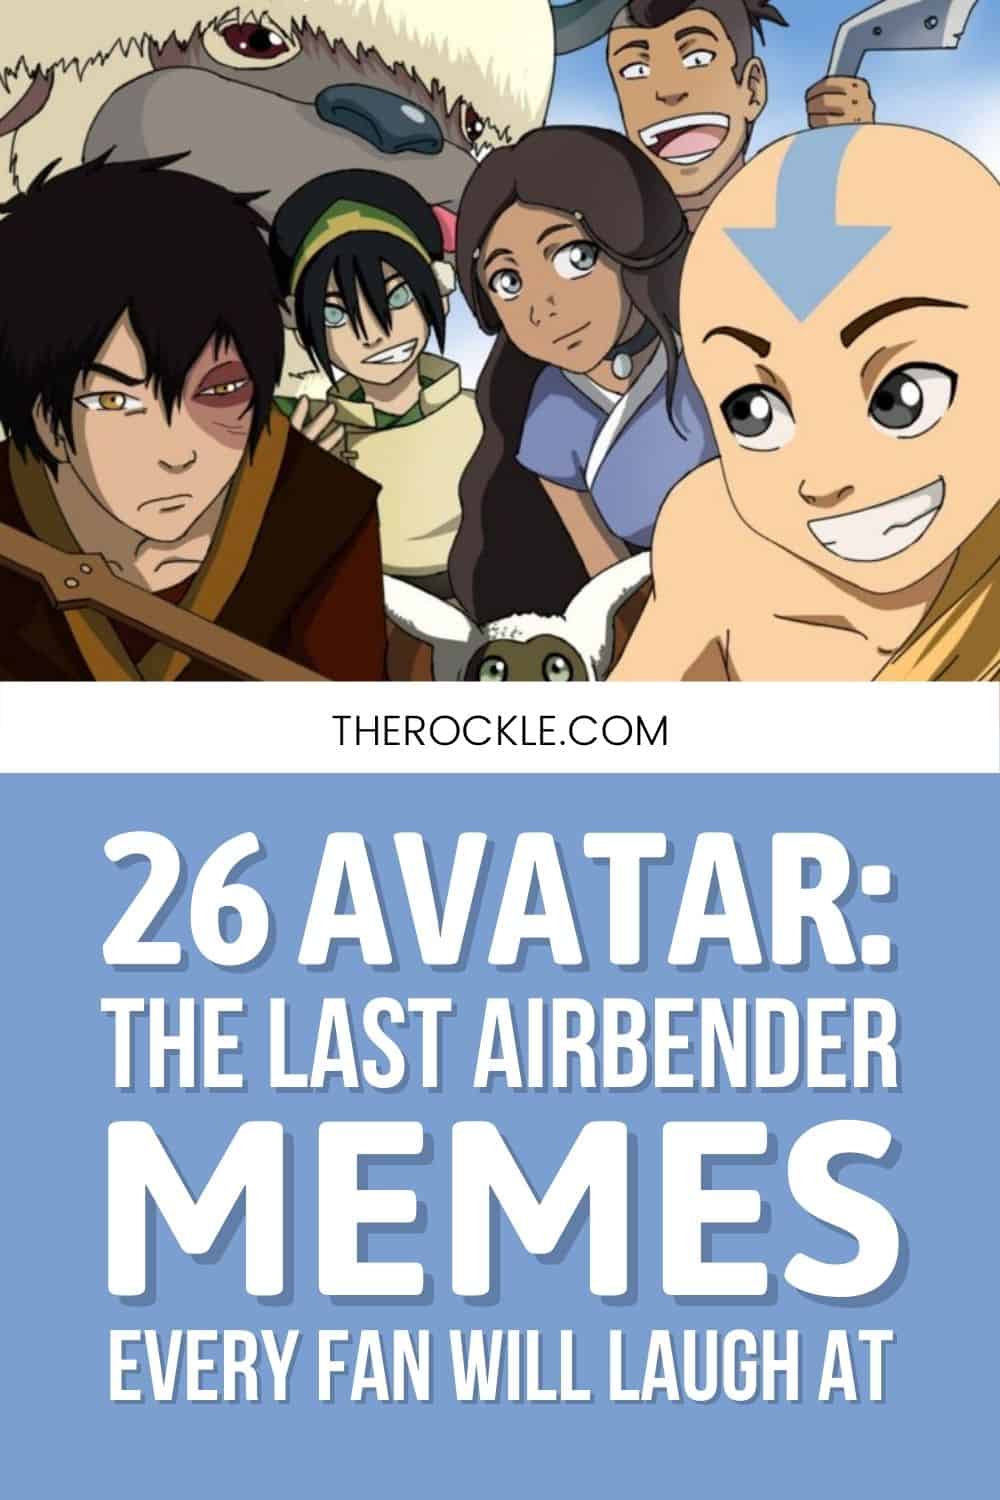 Những hình ảnh chế Avatar Aang đang gây sốt trên mạng xã hội với hàng trăm lượt like và chia sẻ. Cùng đến với chúng tôi để tìm hiểu và thưởng thức những bức ảnh hài hước về chàng trai này.